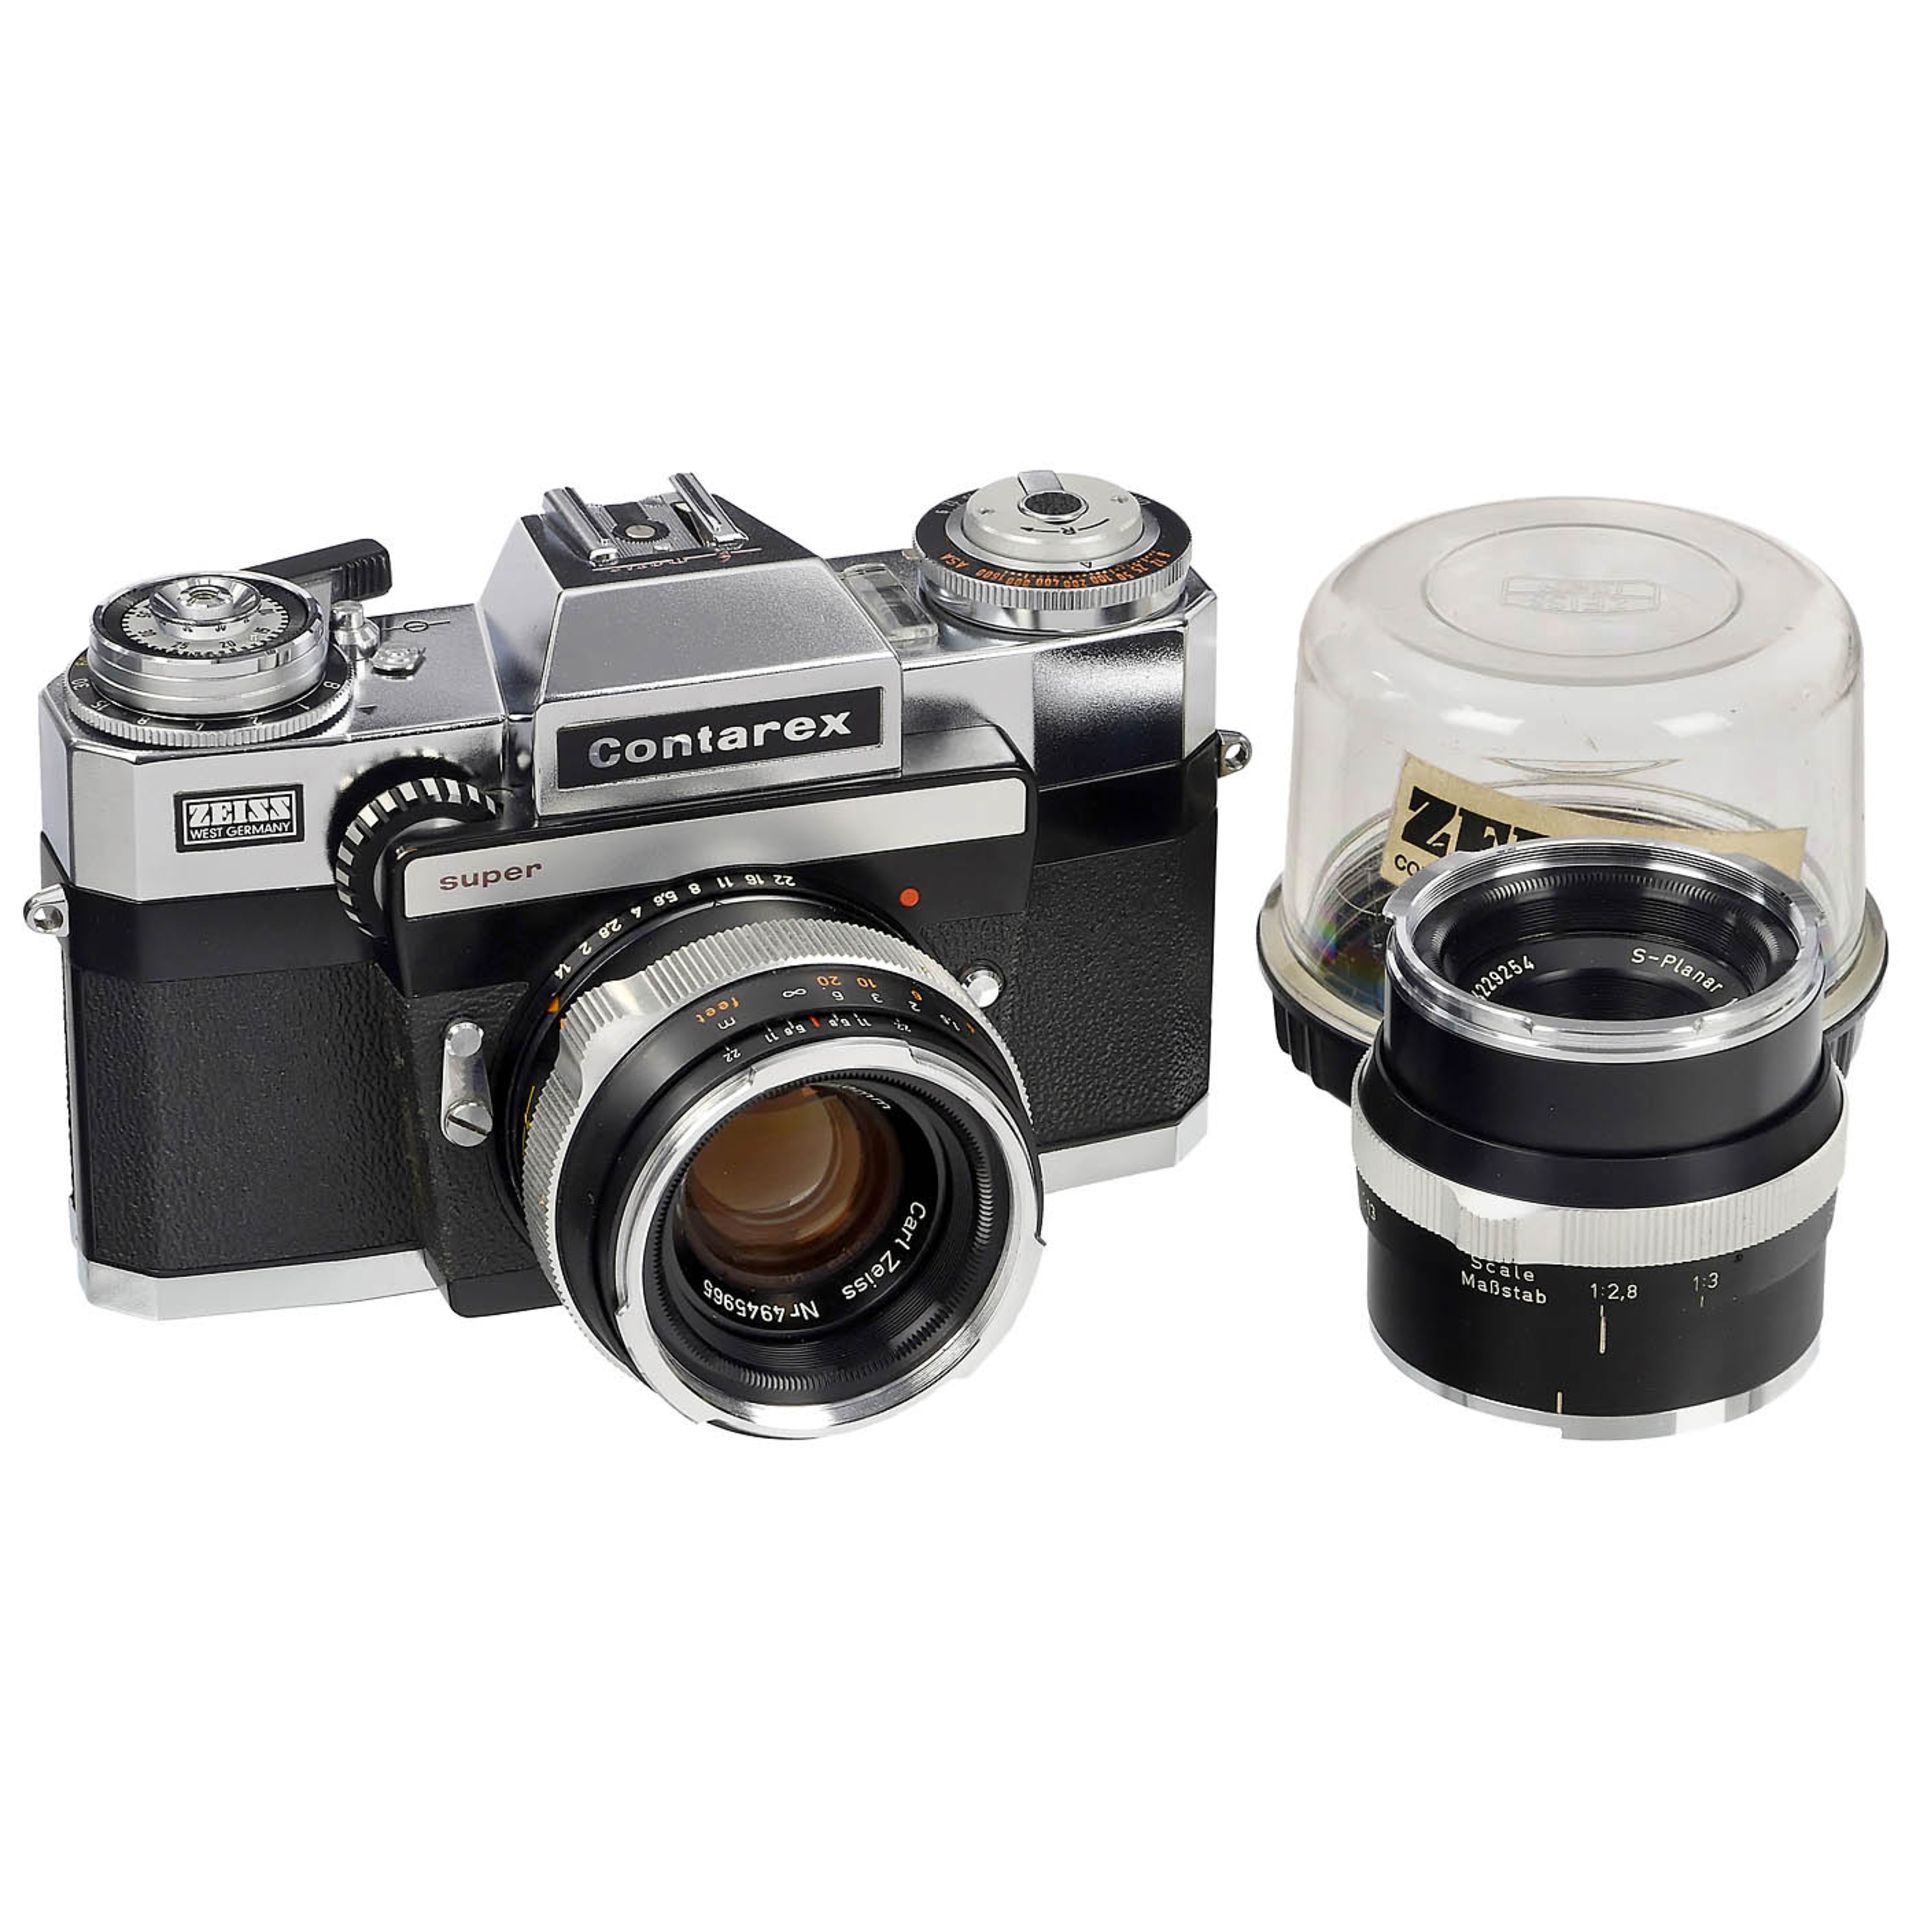 S-Planar 4/50 mm Lens and a Contarex super Camera